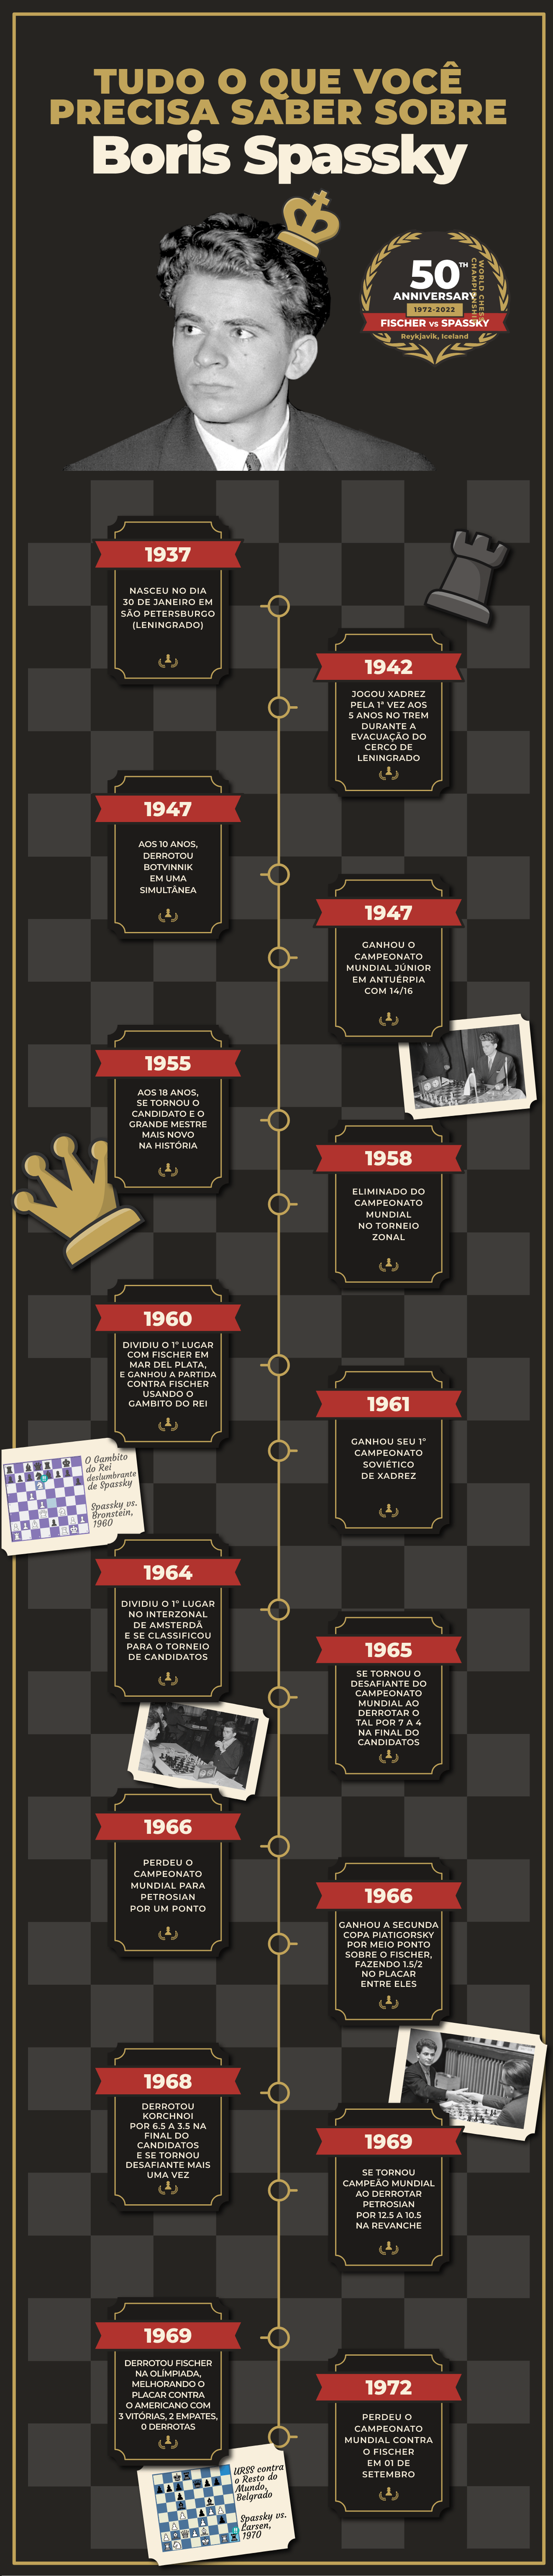 História do Xadrez: Os Desafiantes dos Campeões Mundiais